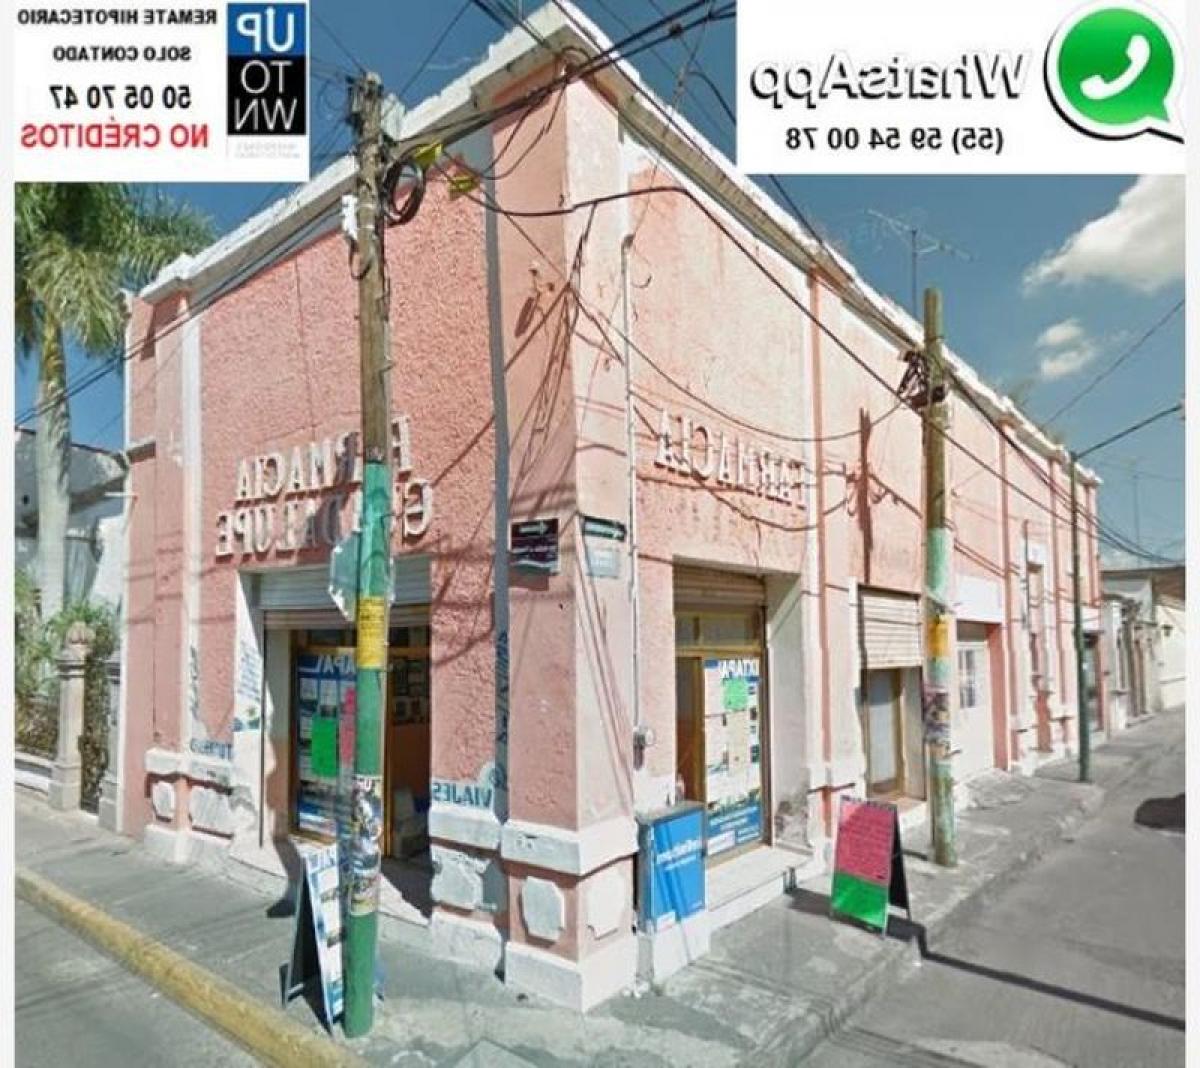 Picture of Apartment Building For Sale in Moroleon, Guanajuato, Mexico